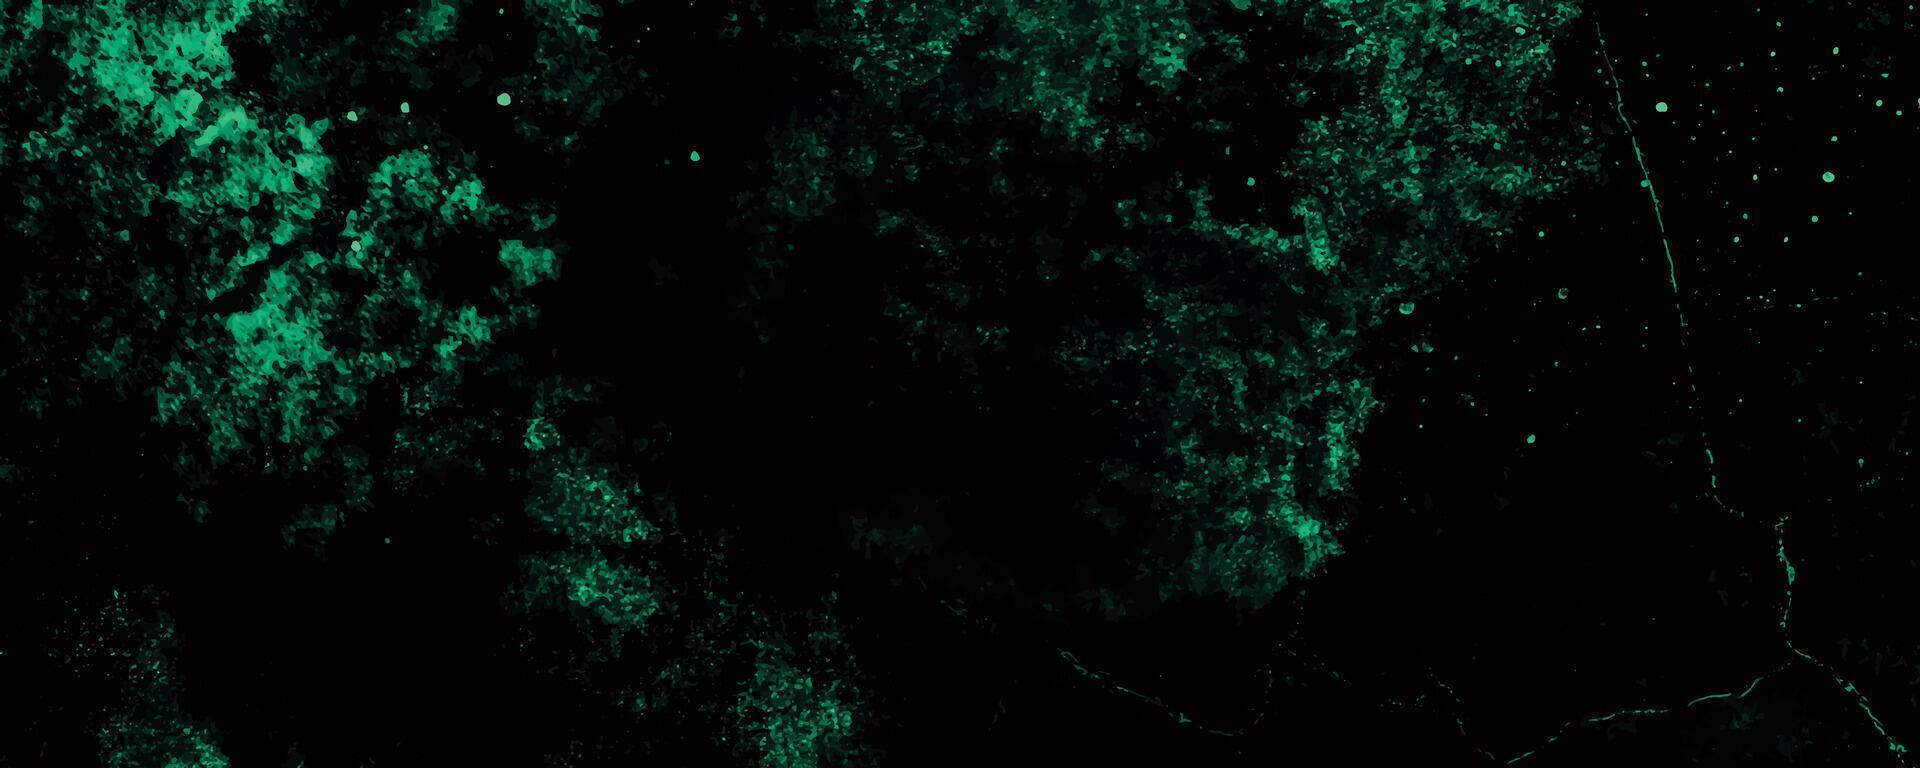 Scratch grunge urban background, distressed green grunge texture on a dark background vector